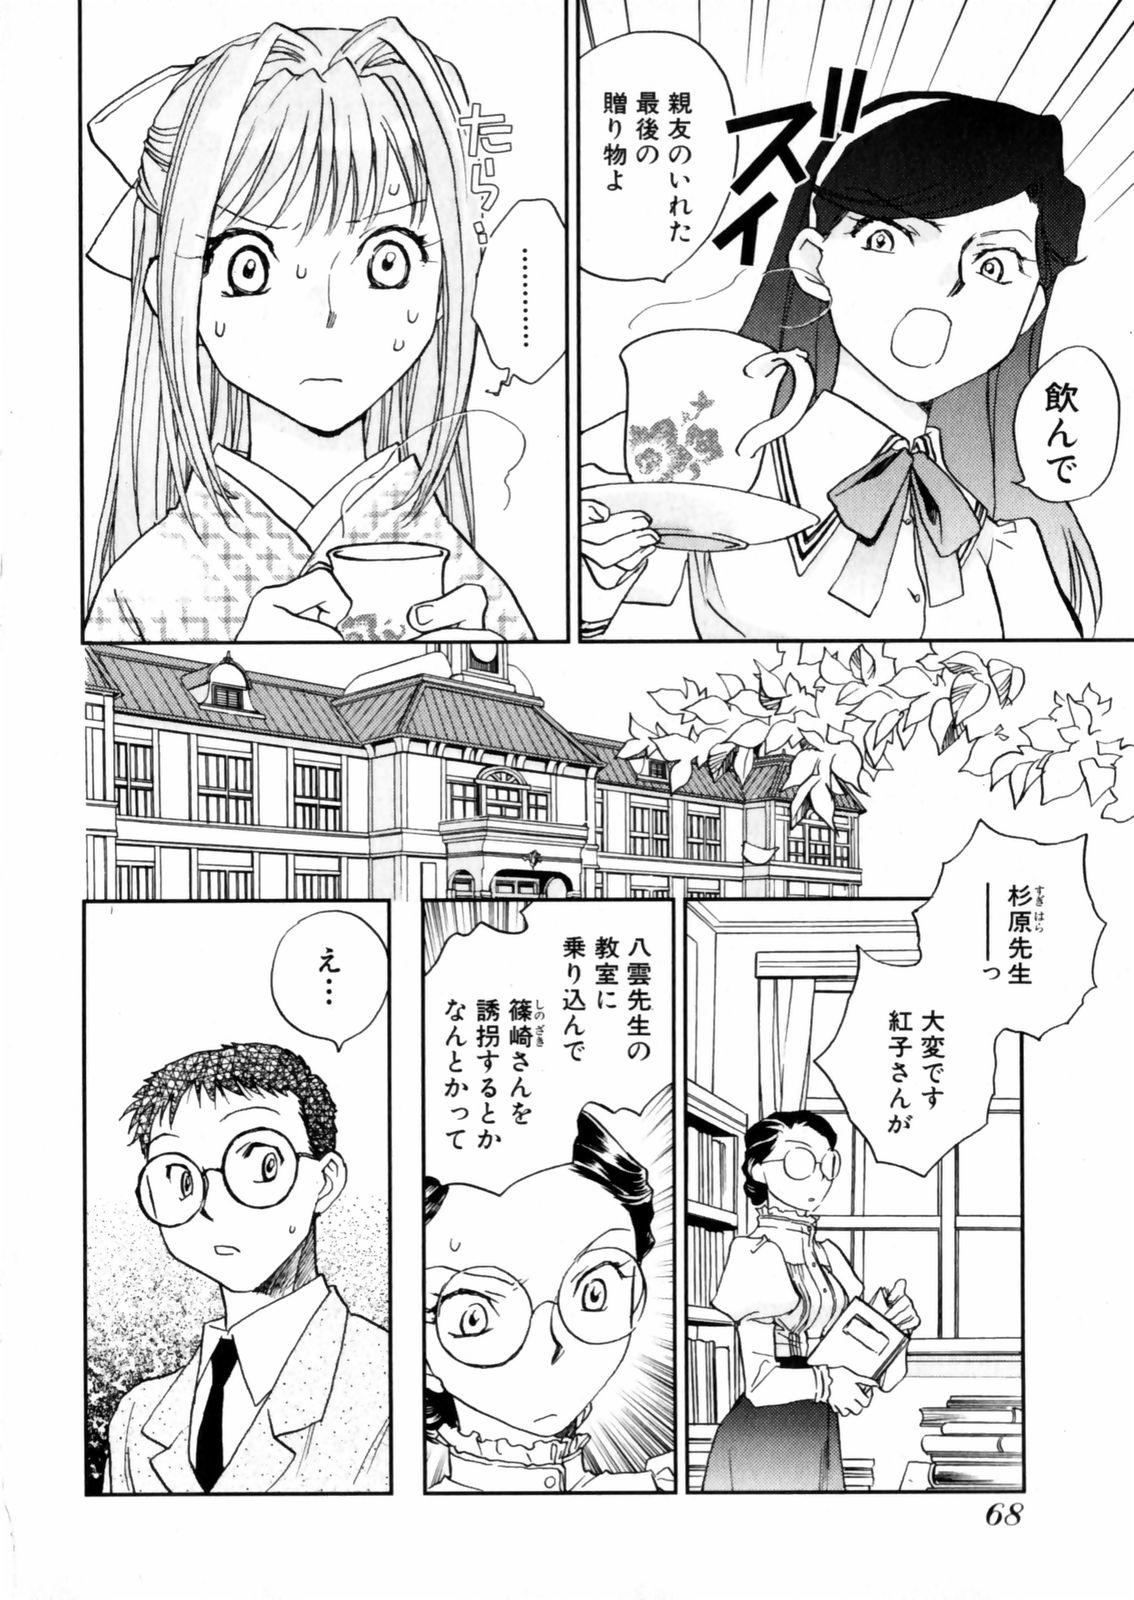 [Okano Ahiru] Hanasake ! Otome Juku (Otome Private Tutoring School) Vol.2 69